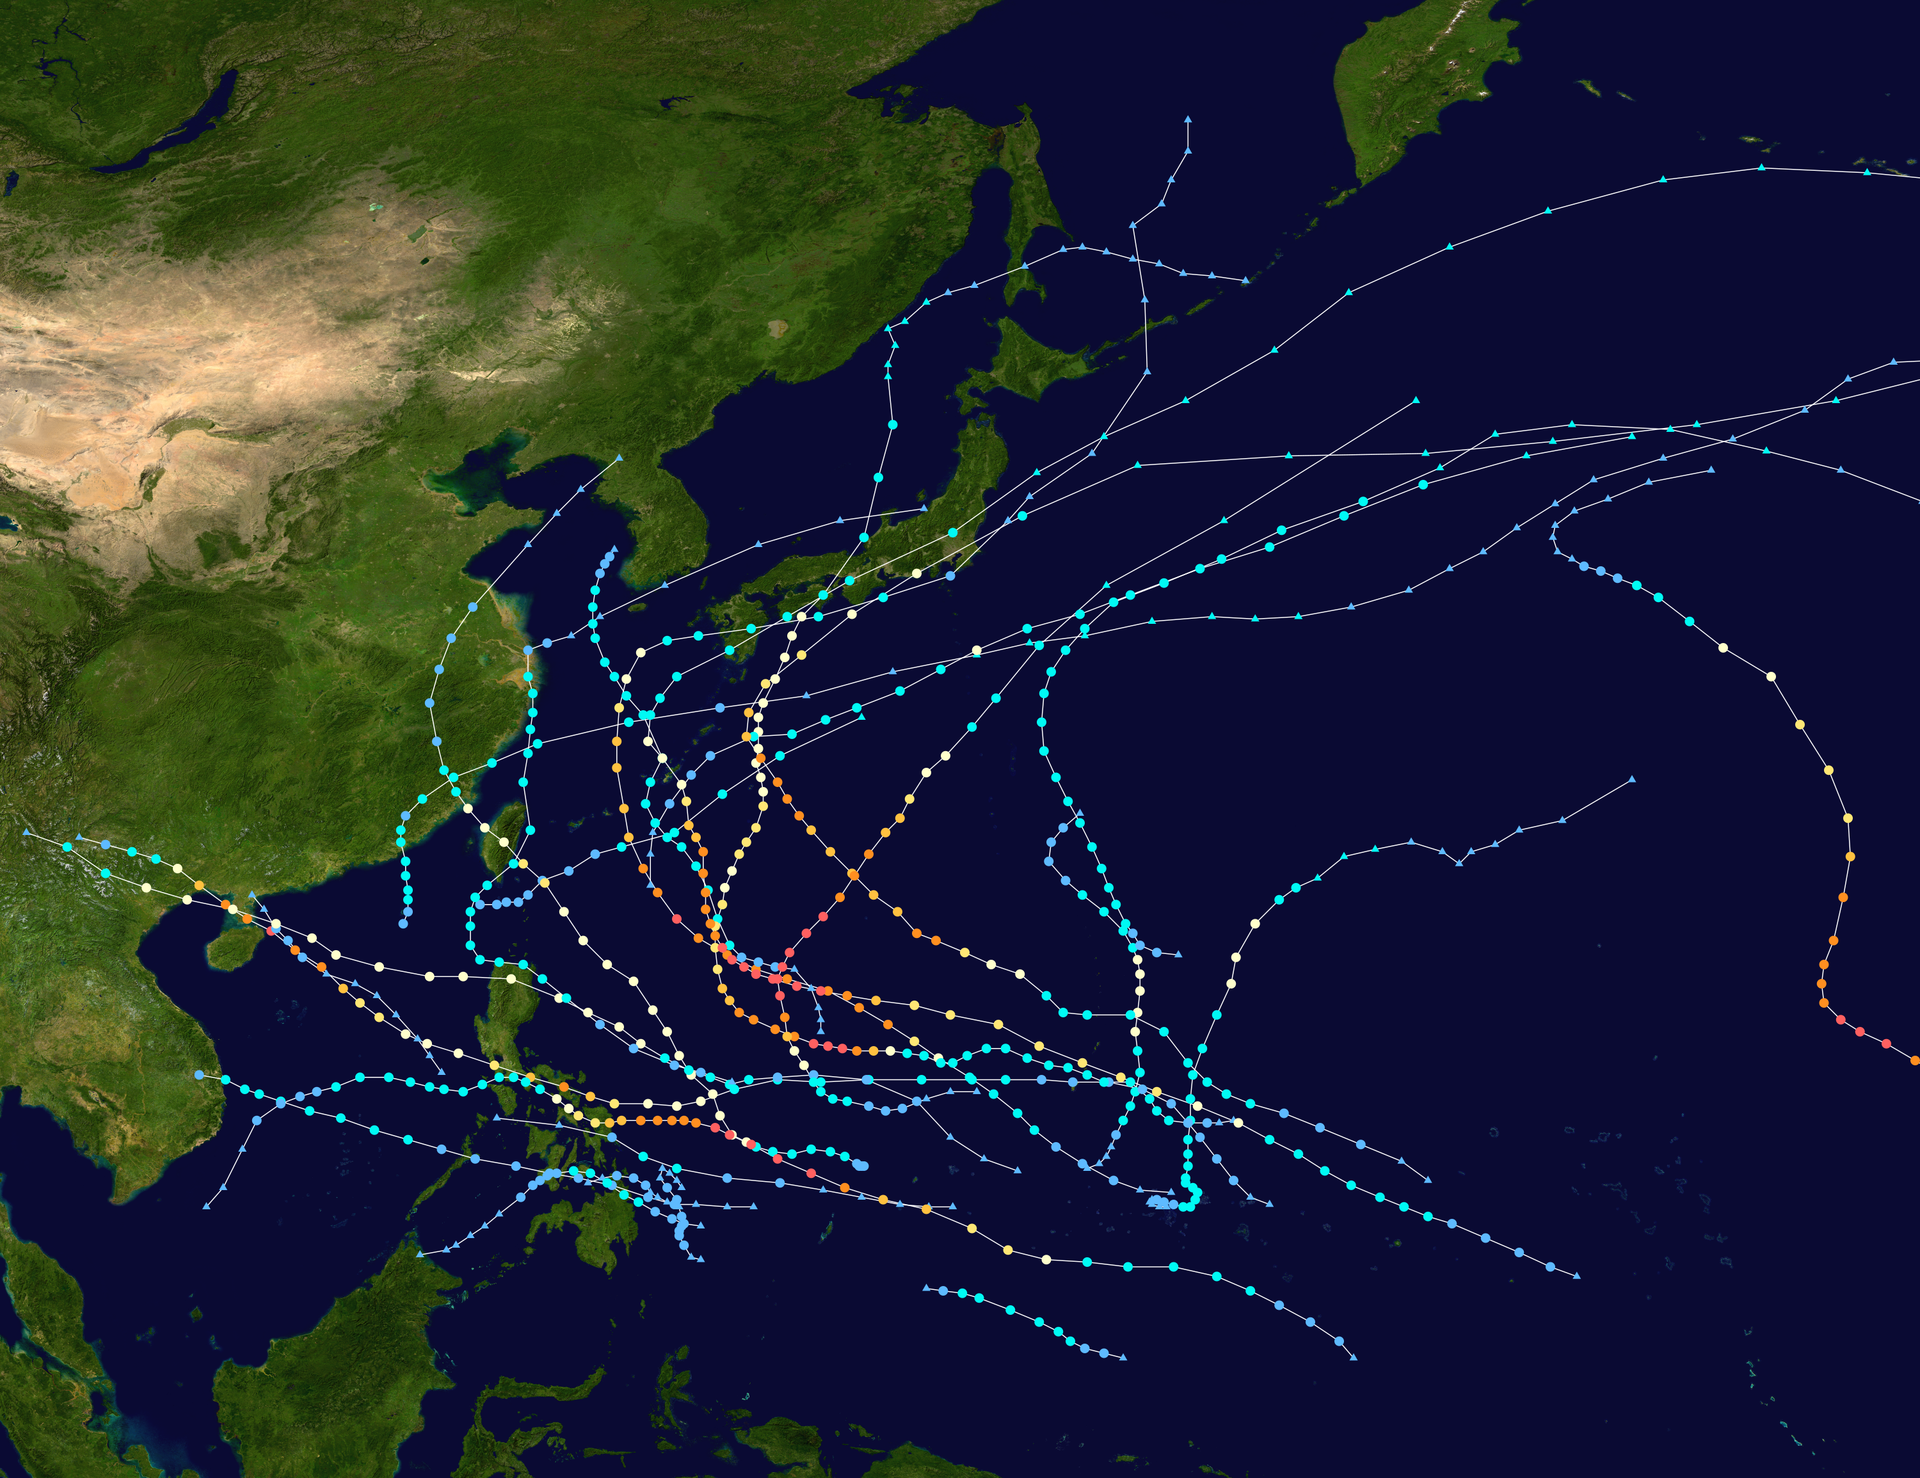 Na ilustracji zdjęcie lotnicze Azji Wschodniej z zaznaczonymi trasami przemieszczania się tajfunów. Wiele kolorowych krzyżujących się tras o podobnym przebiegu. Tajfuny nadciągają znad Oceanu Spokojnego w kierunku wysp a następnie zawracają z powrotem w kierunku oceanu.